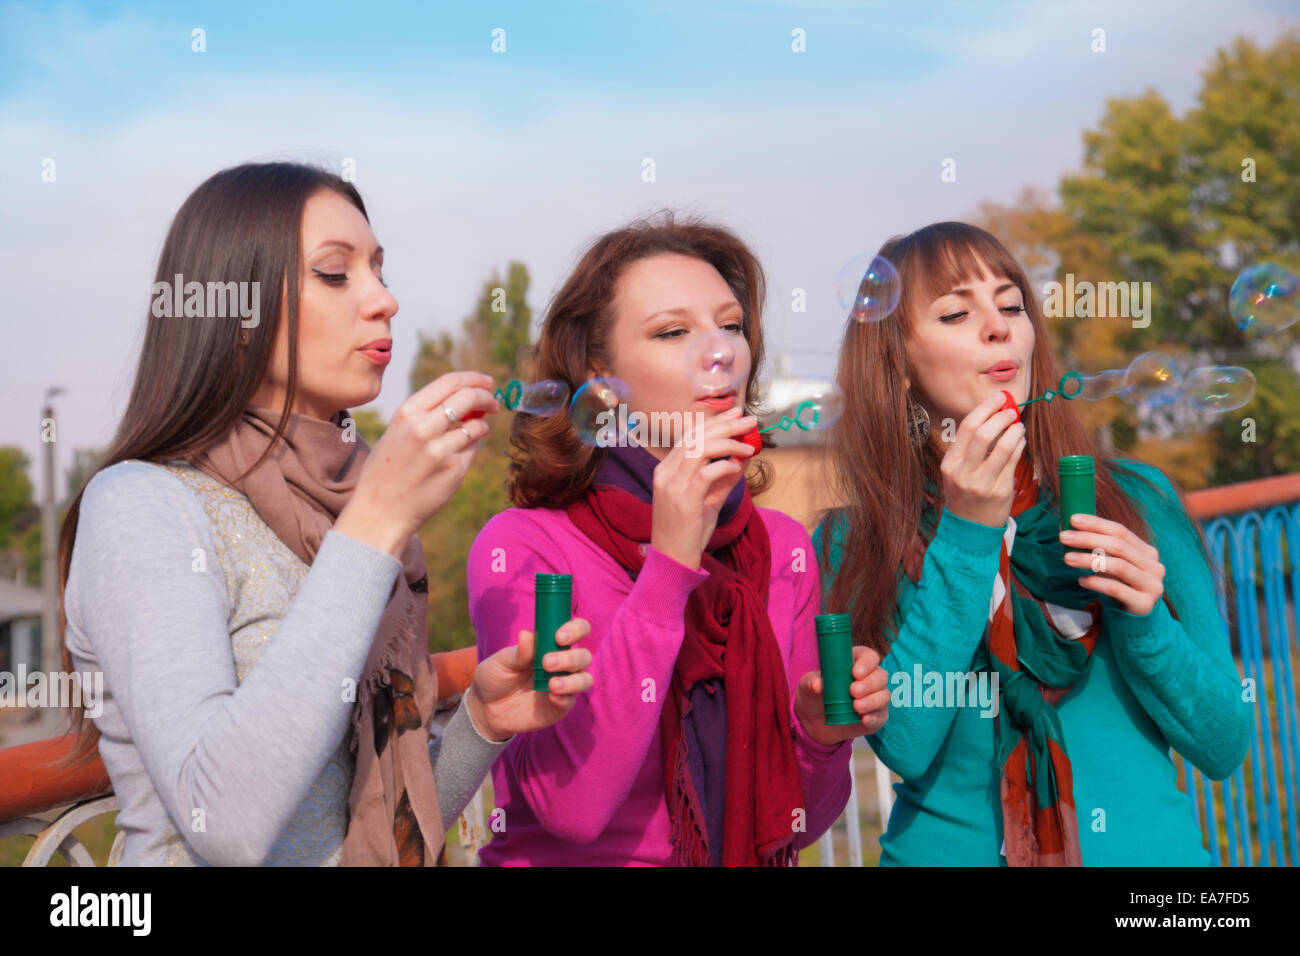 Drei junge schöne Frauen sprengen Luftblasen Stockfoto